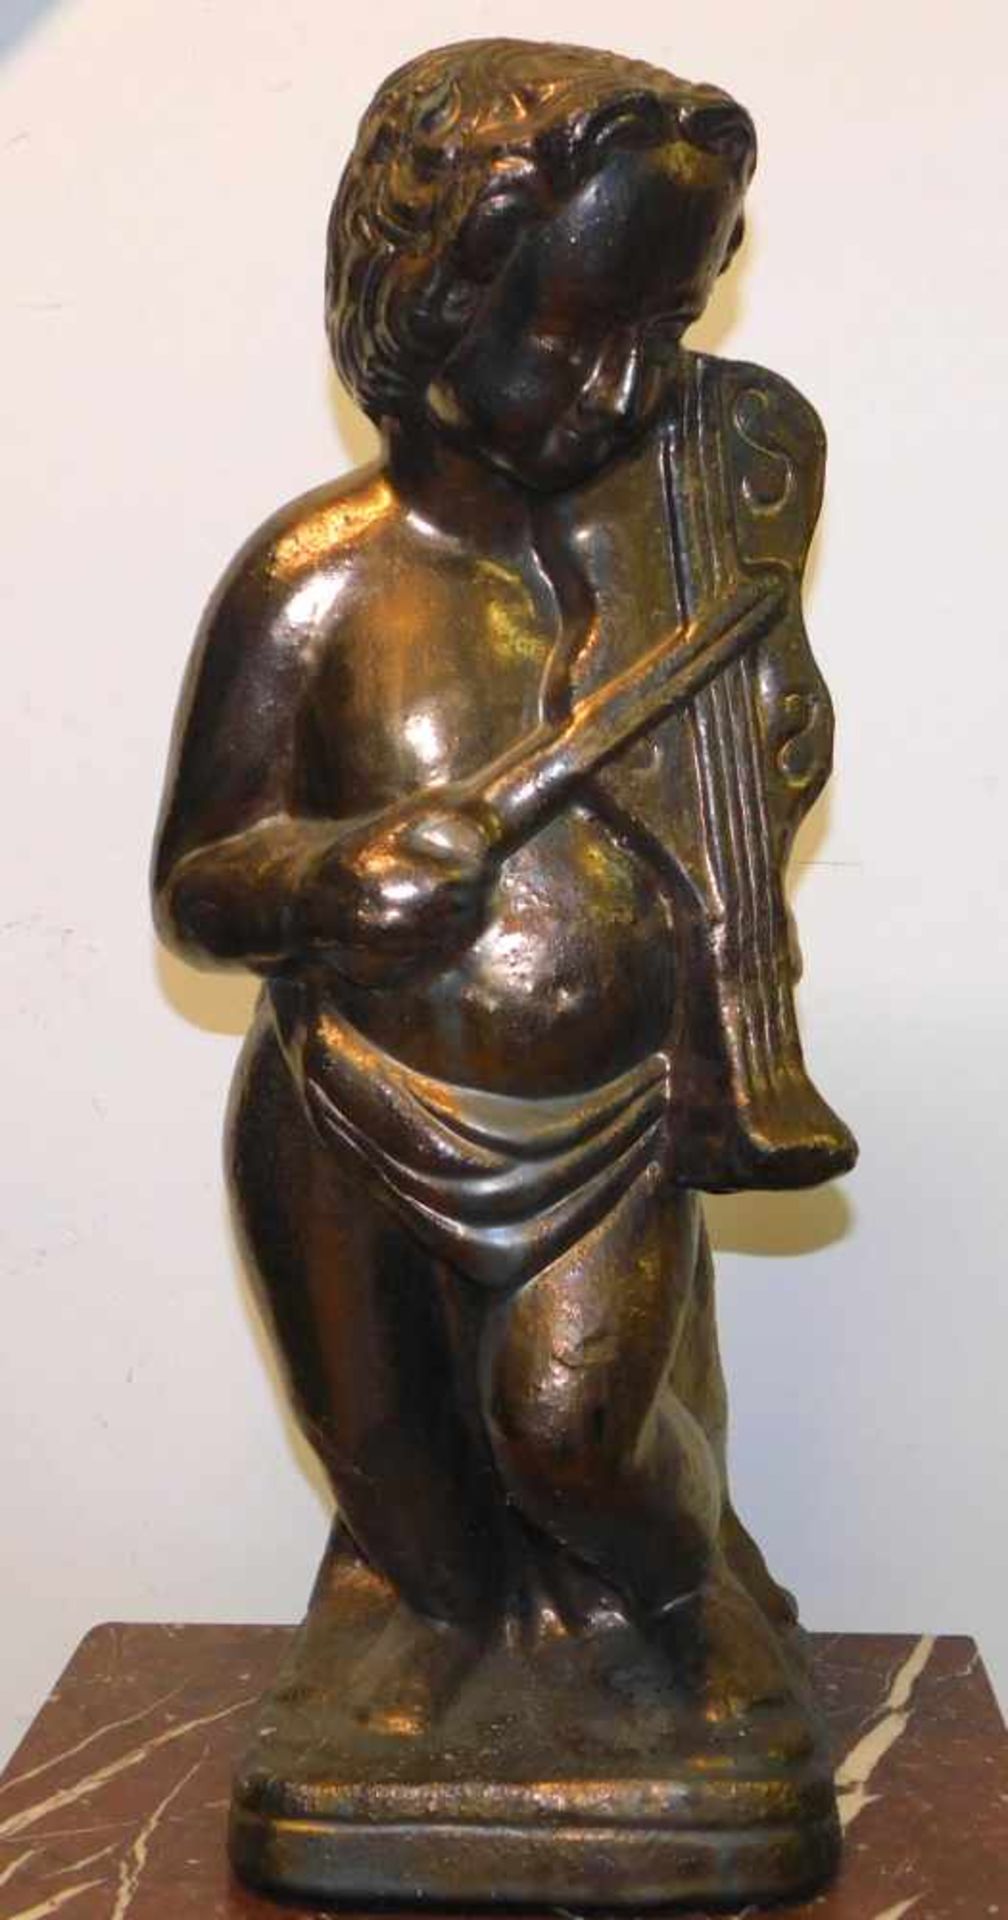 Engel mit Geige, Terrakotta in Goldbronze gefasst, 2. H. 20. Jhdt., Höhe 62 cm, Sockel 19 x 22 cm.